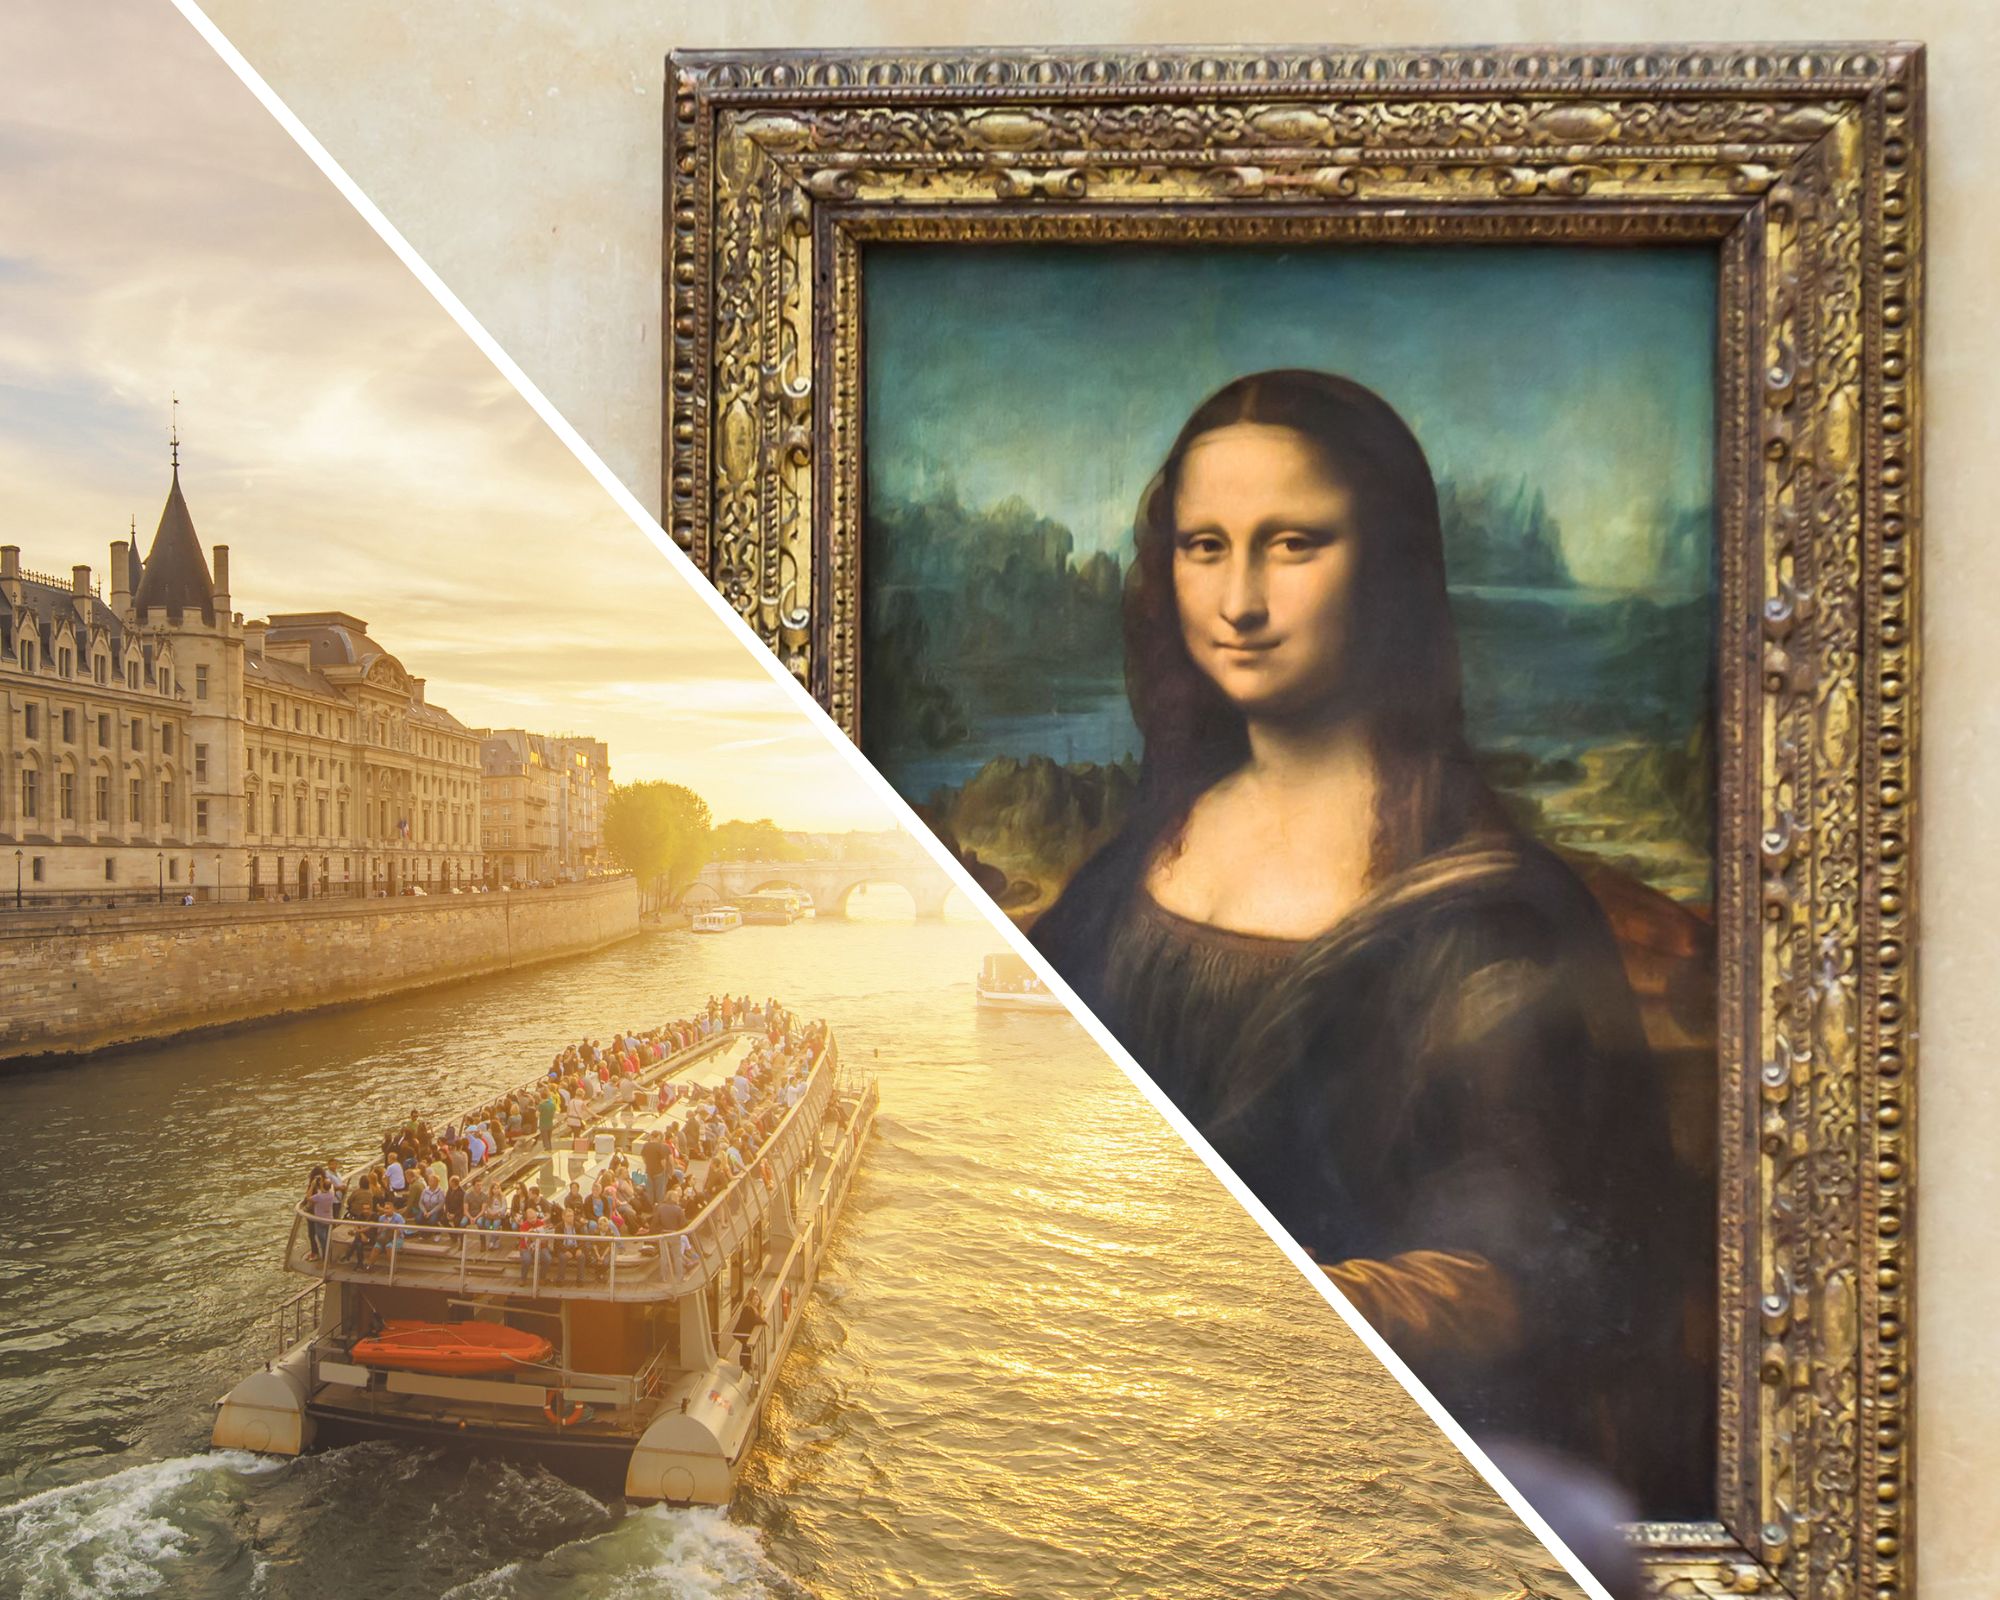 Visite du musée du Louvre et billet croisière sur la Seine, retrait en agence (avec accès prioritaire)